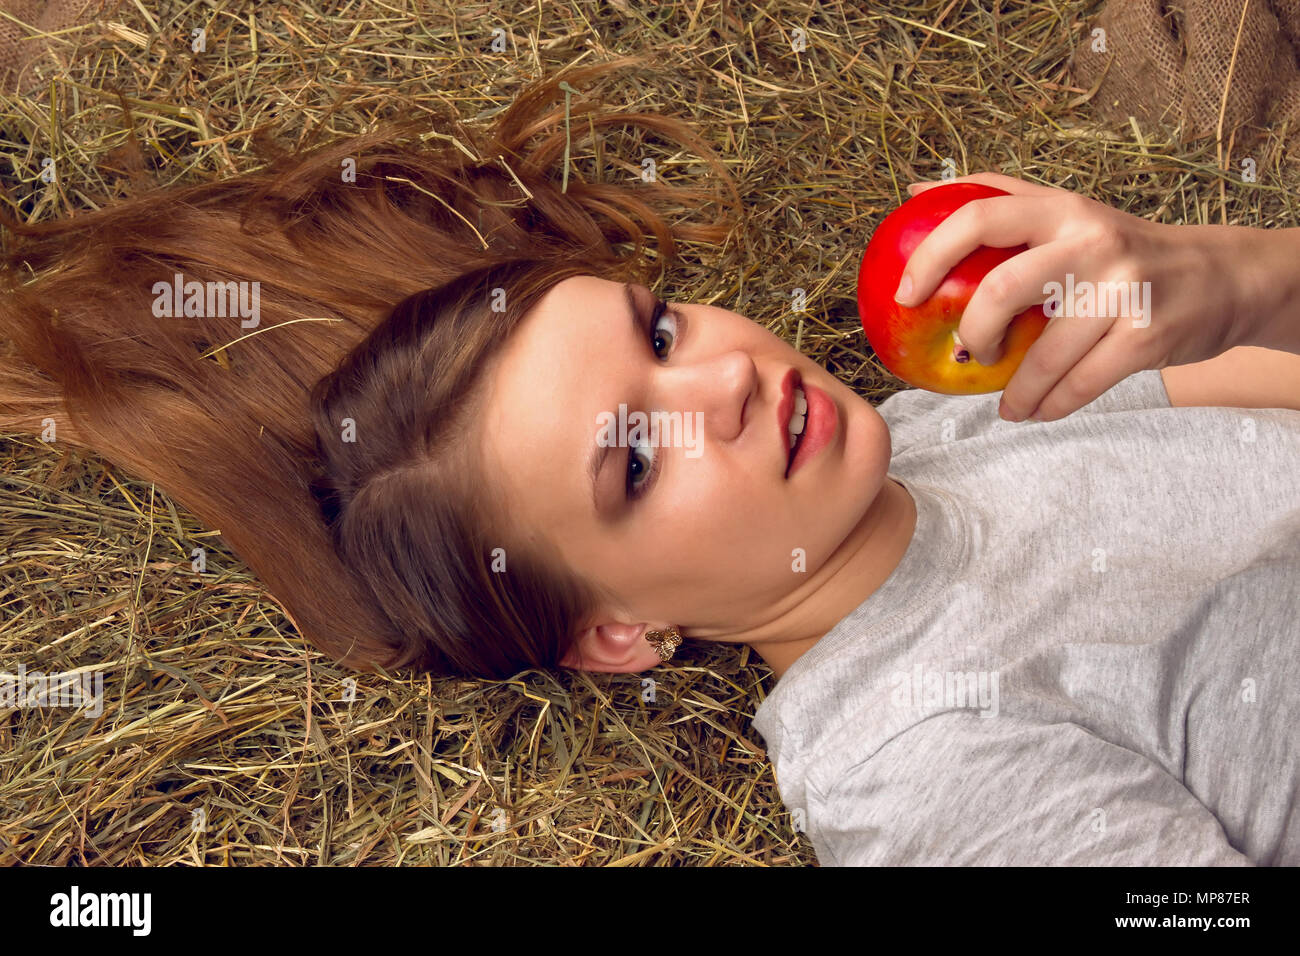 Bella Donna sorridente con molti apple nel cesto su pagliaio presso l'azienda Foto Stock